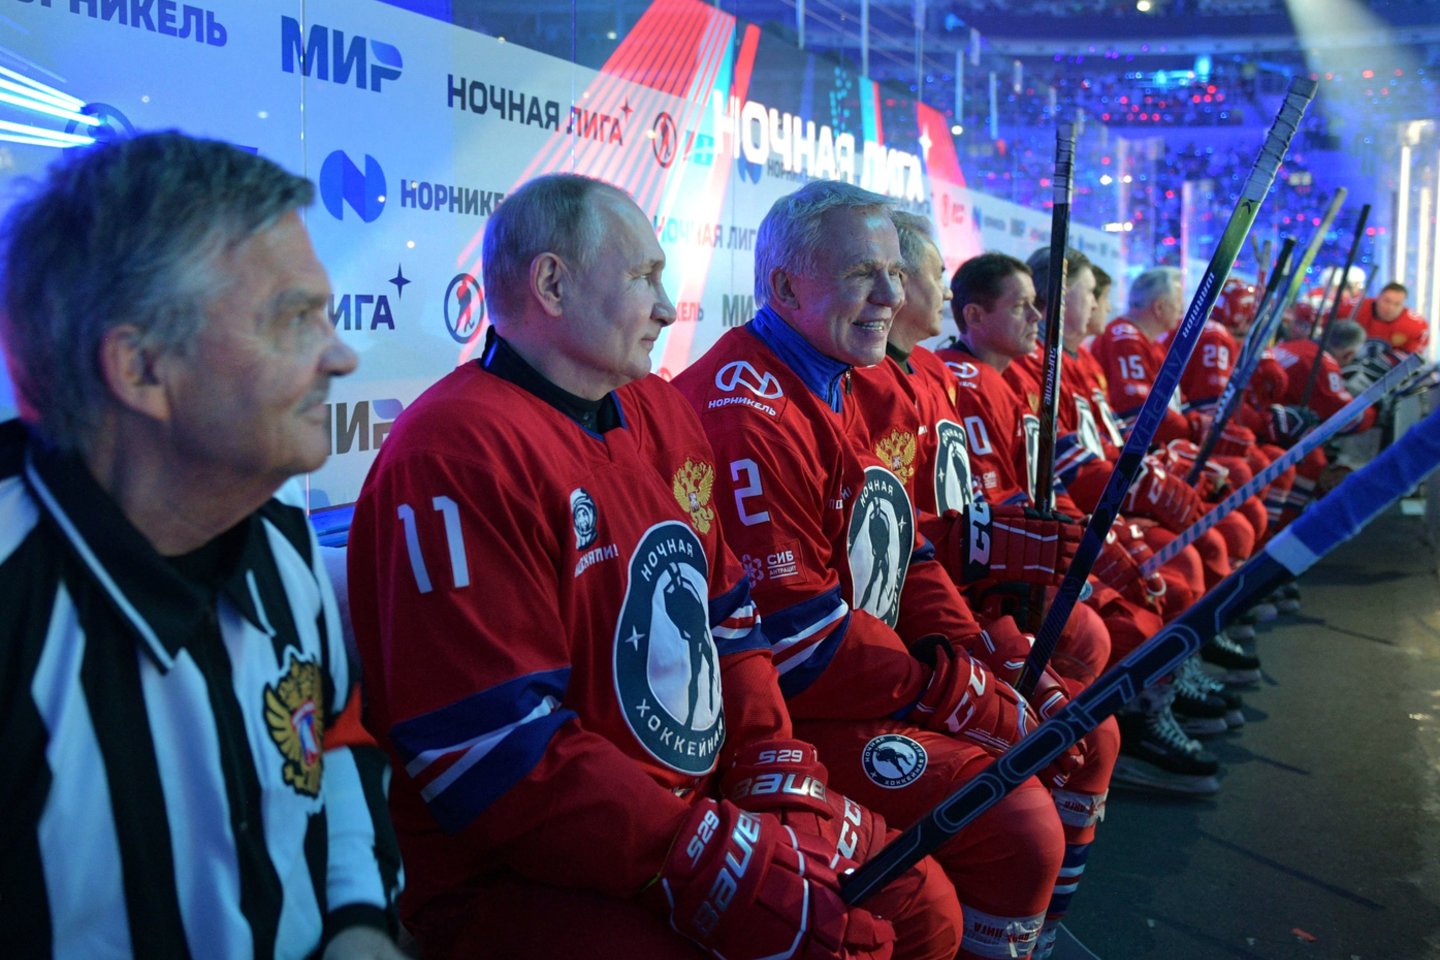 Rusijos prezidentas Vladimiras Putinas kaip visada rezultatyviai žaidė „Naktinėje ledo ritulio“ lygoje.<br> ITAR-TASS/Scanix.com nuotr.